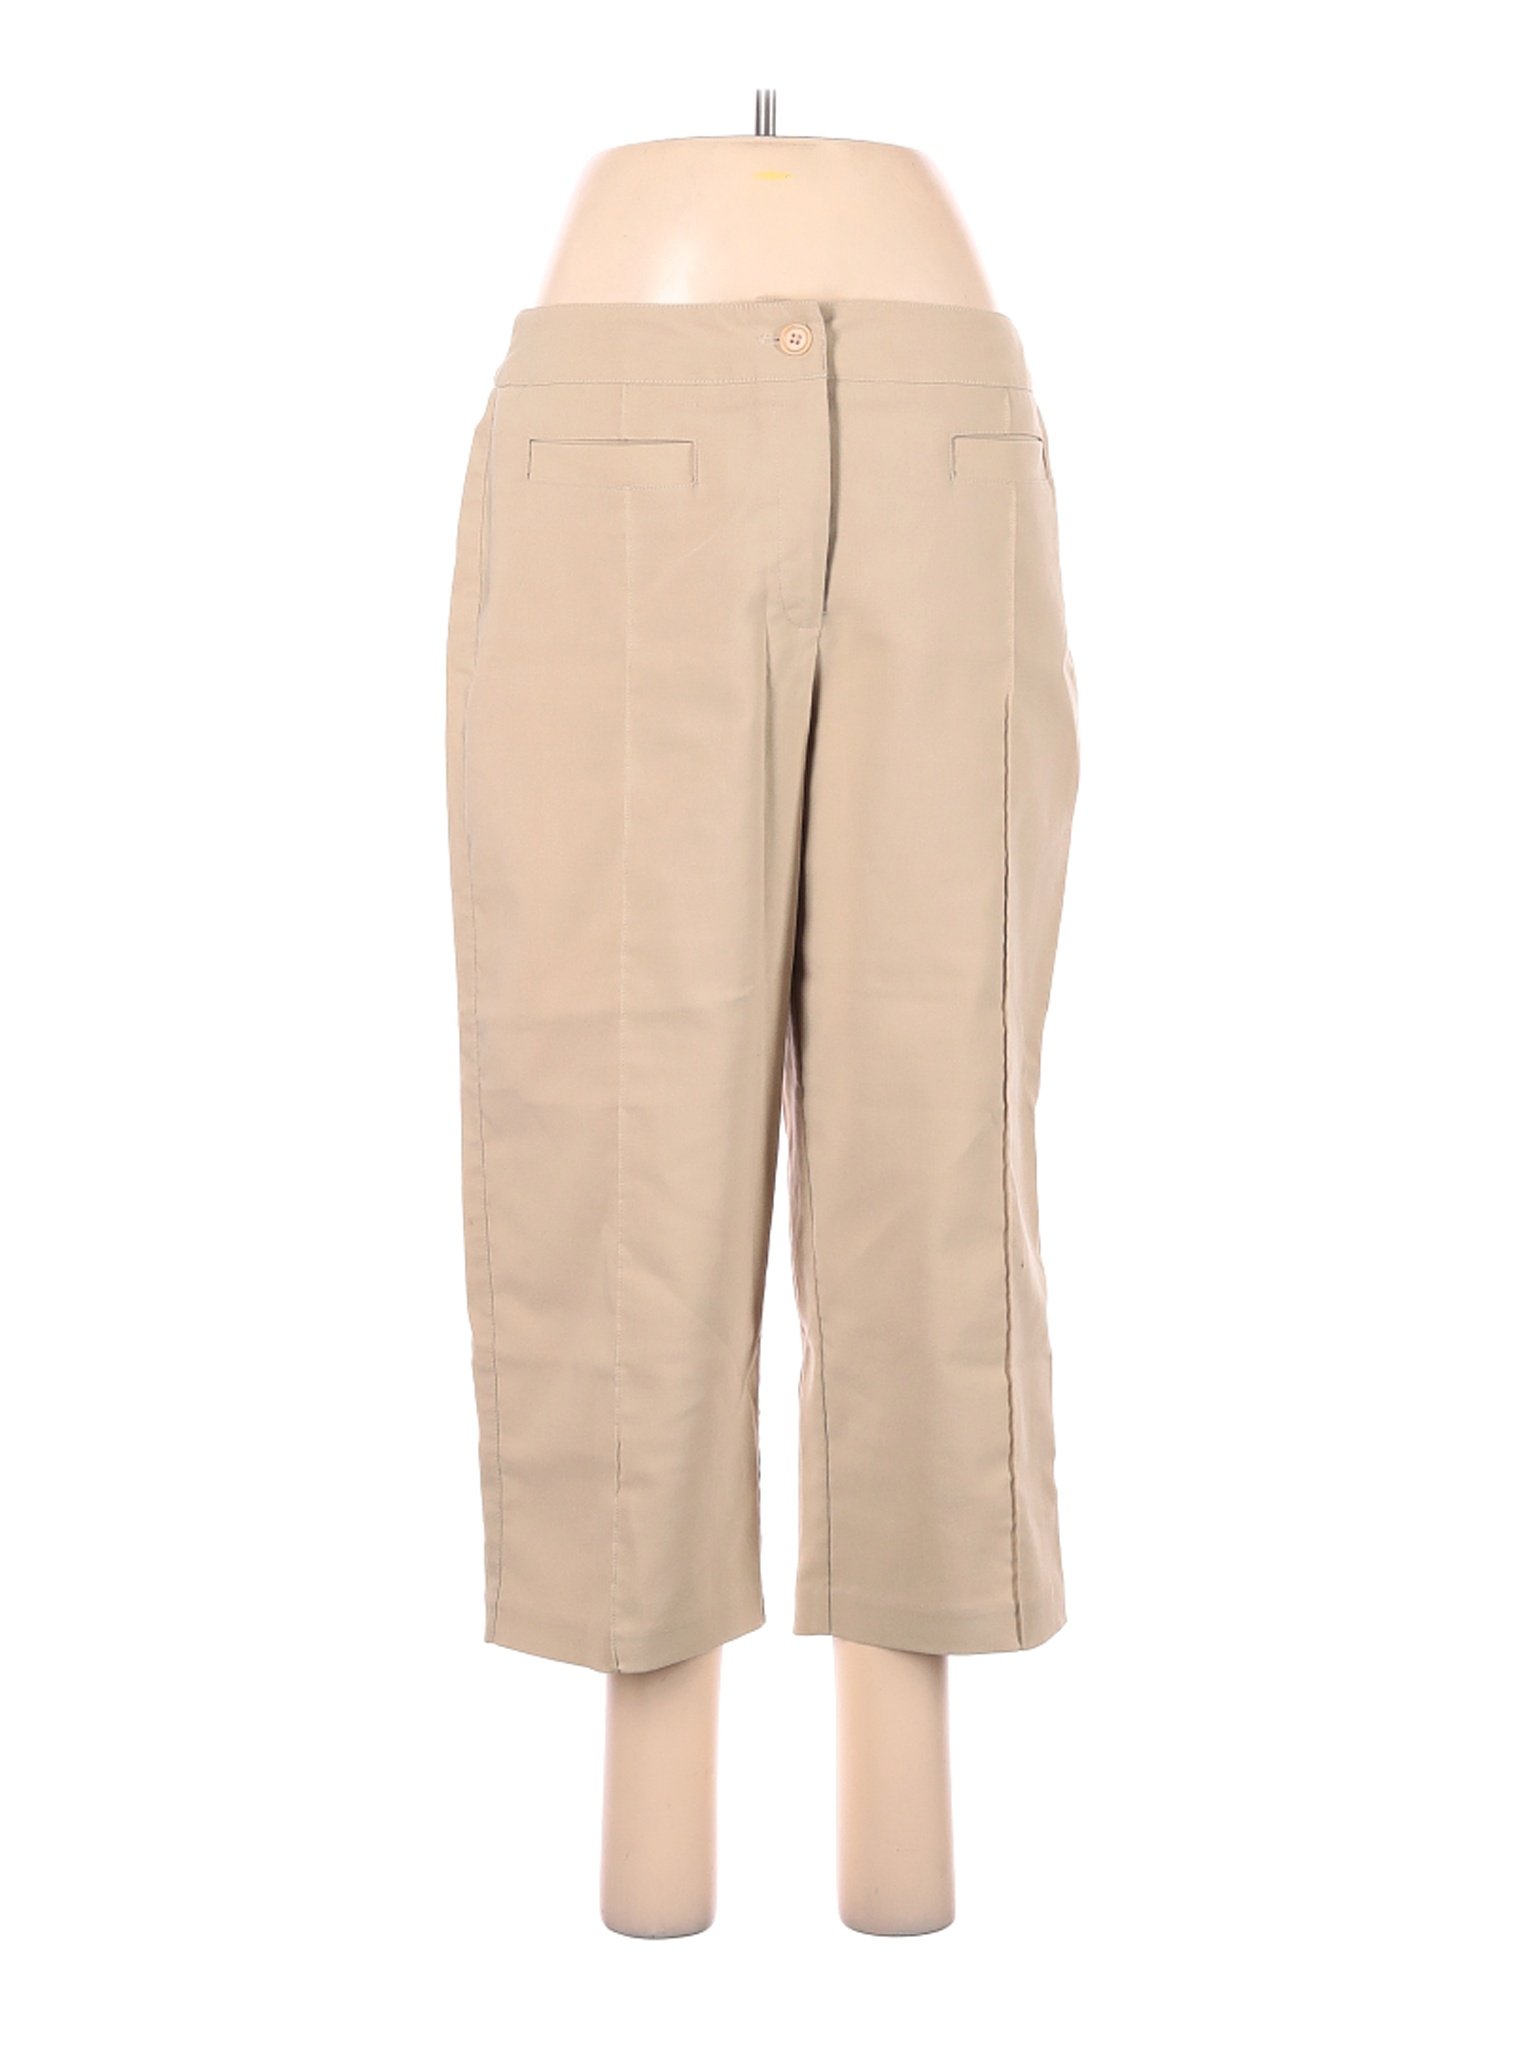 Barbara Lesser Women Brown Casual Pants 8 | eBay